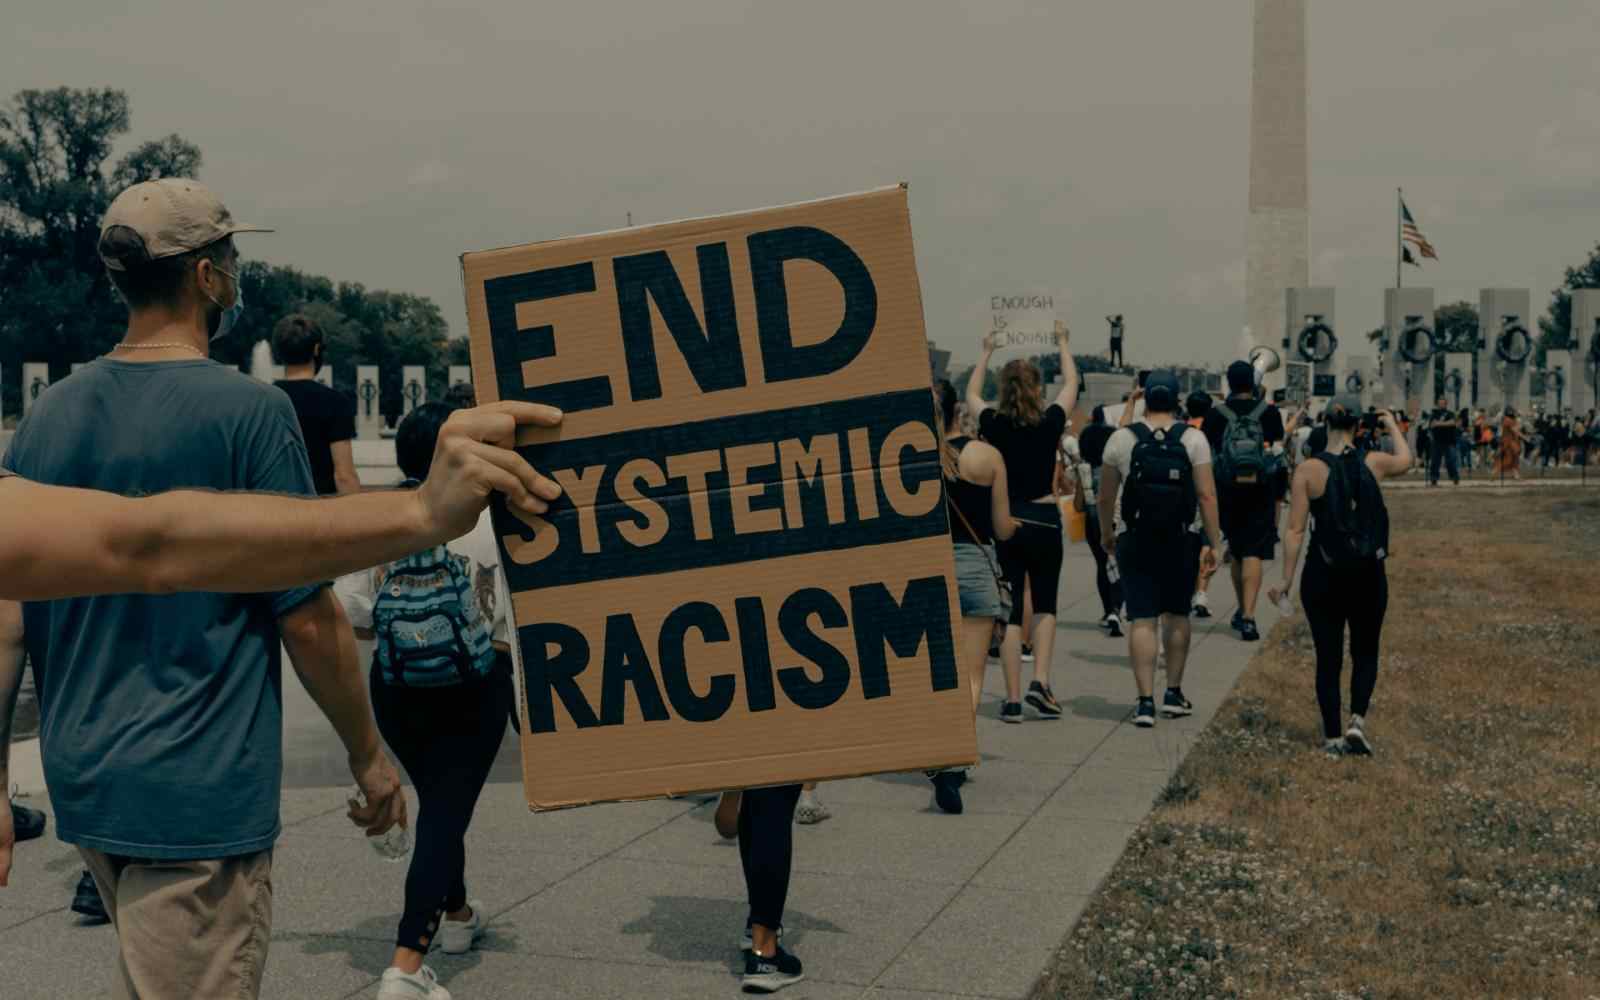 Karton z napisem "end systemic racism" (tłum. zakończmy systemowy rasizm) trzymana przez osobę protestującą. W tle inne osoby uczestniczące w proteście.